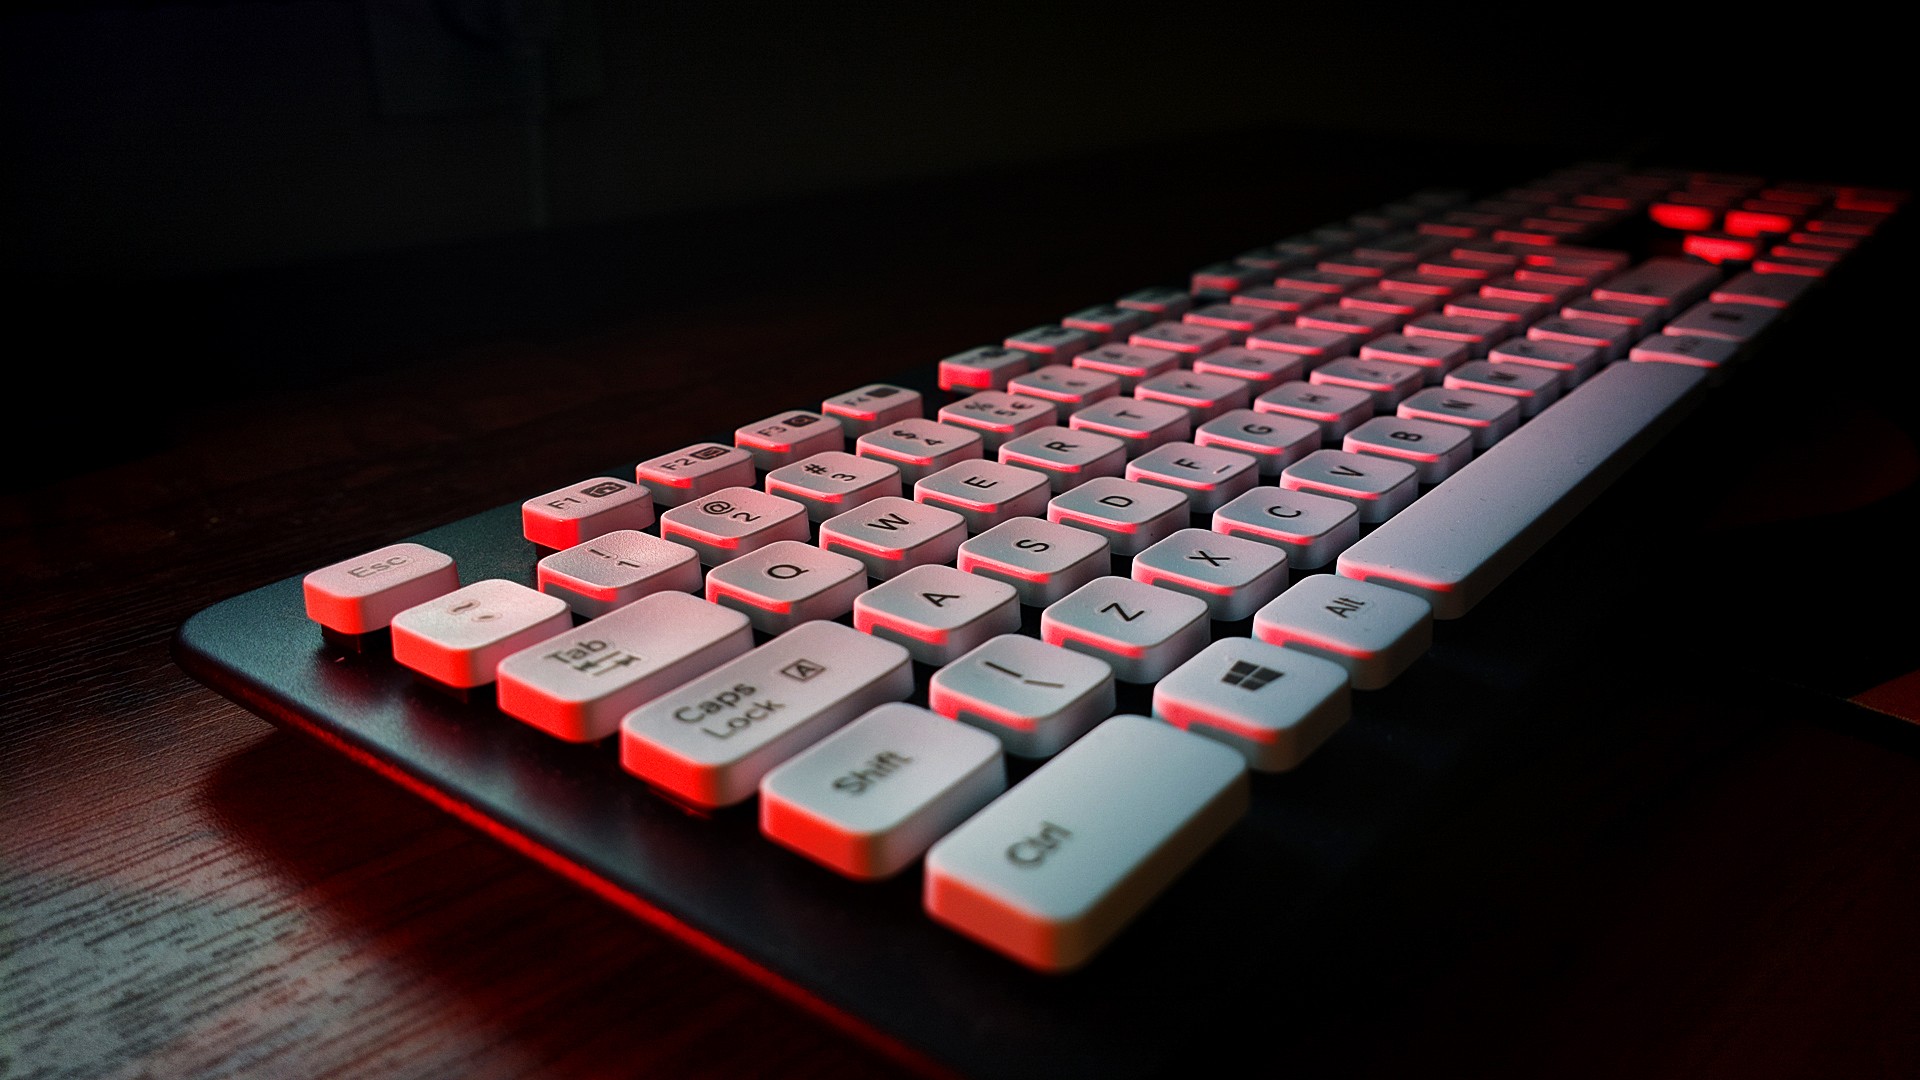 tastatur hintergrund hd,computer tastatur,rot,technologie,büroausstattung,licht